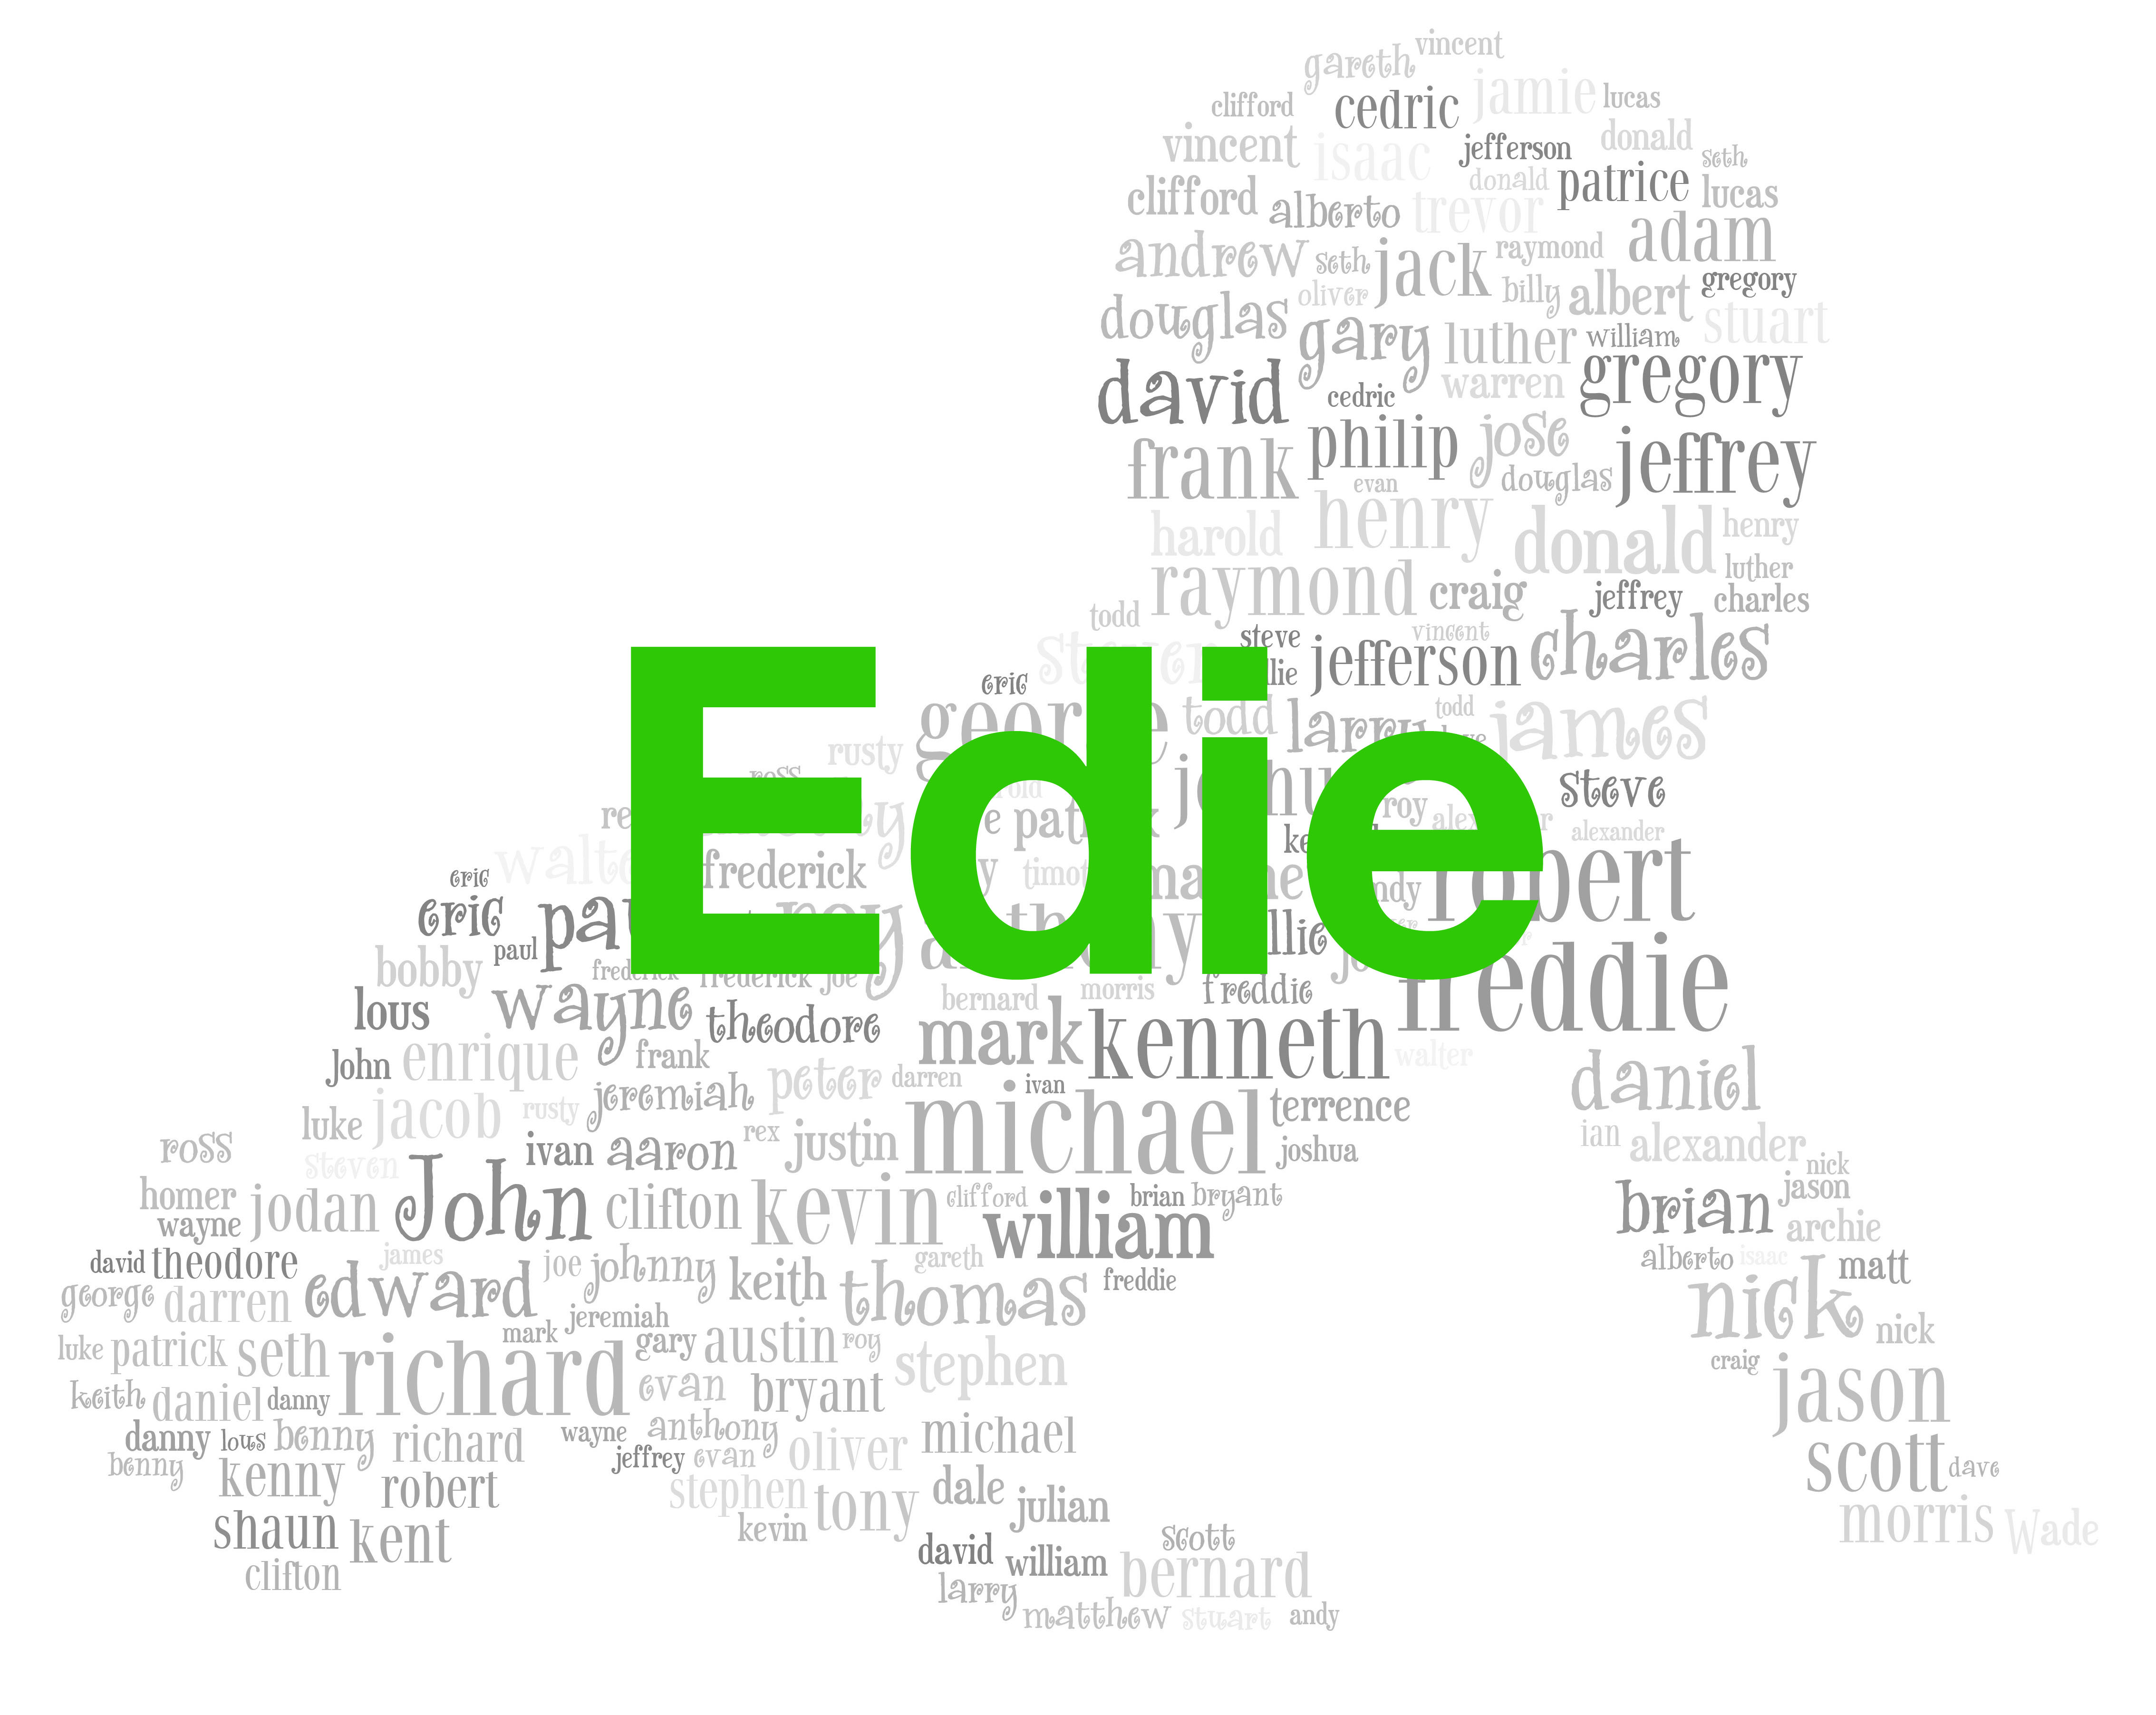 Girls: Edie